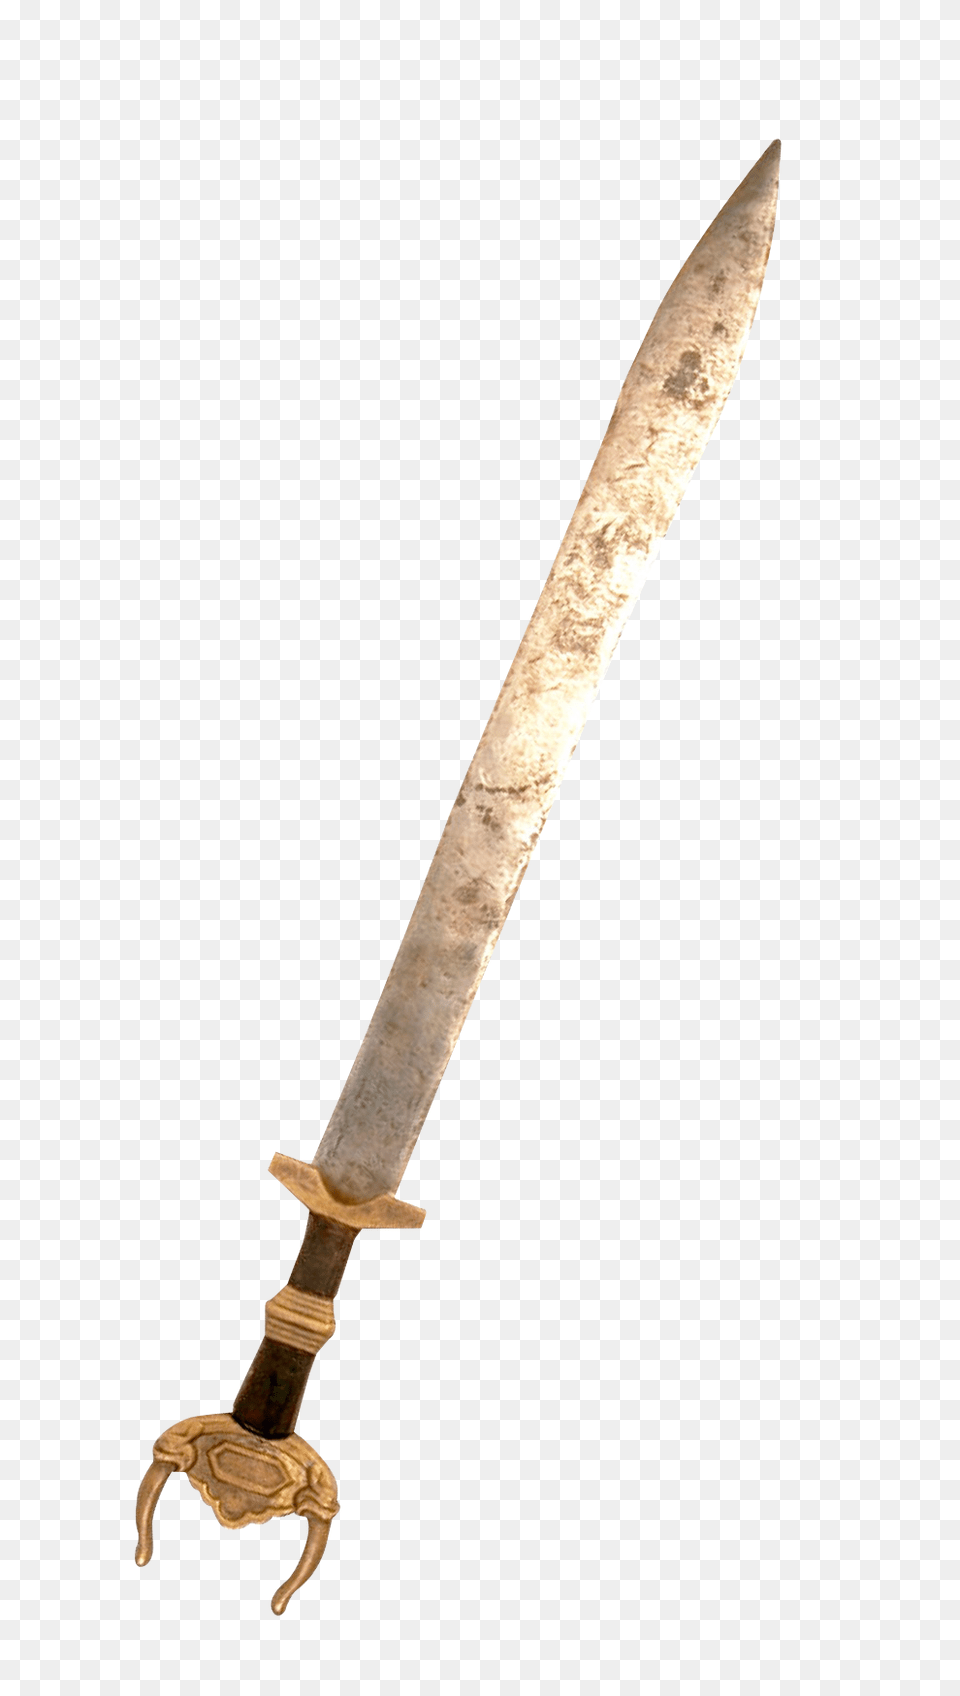 Pngpix Com Old Sword Image, Weapon, Blade, Dagger, Knife Free Transparent Png